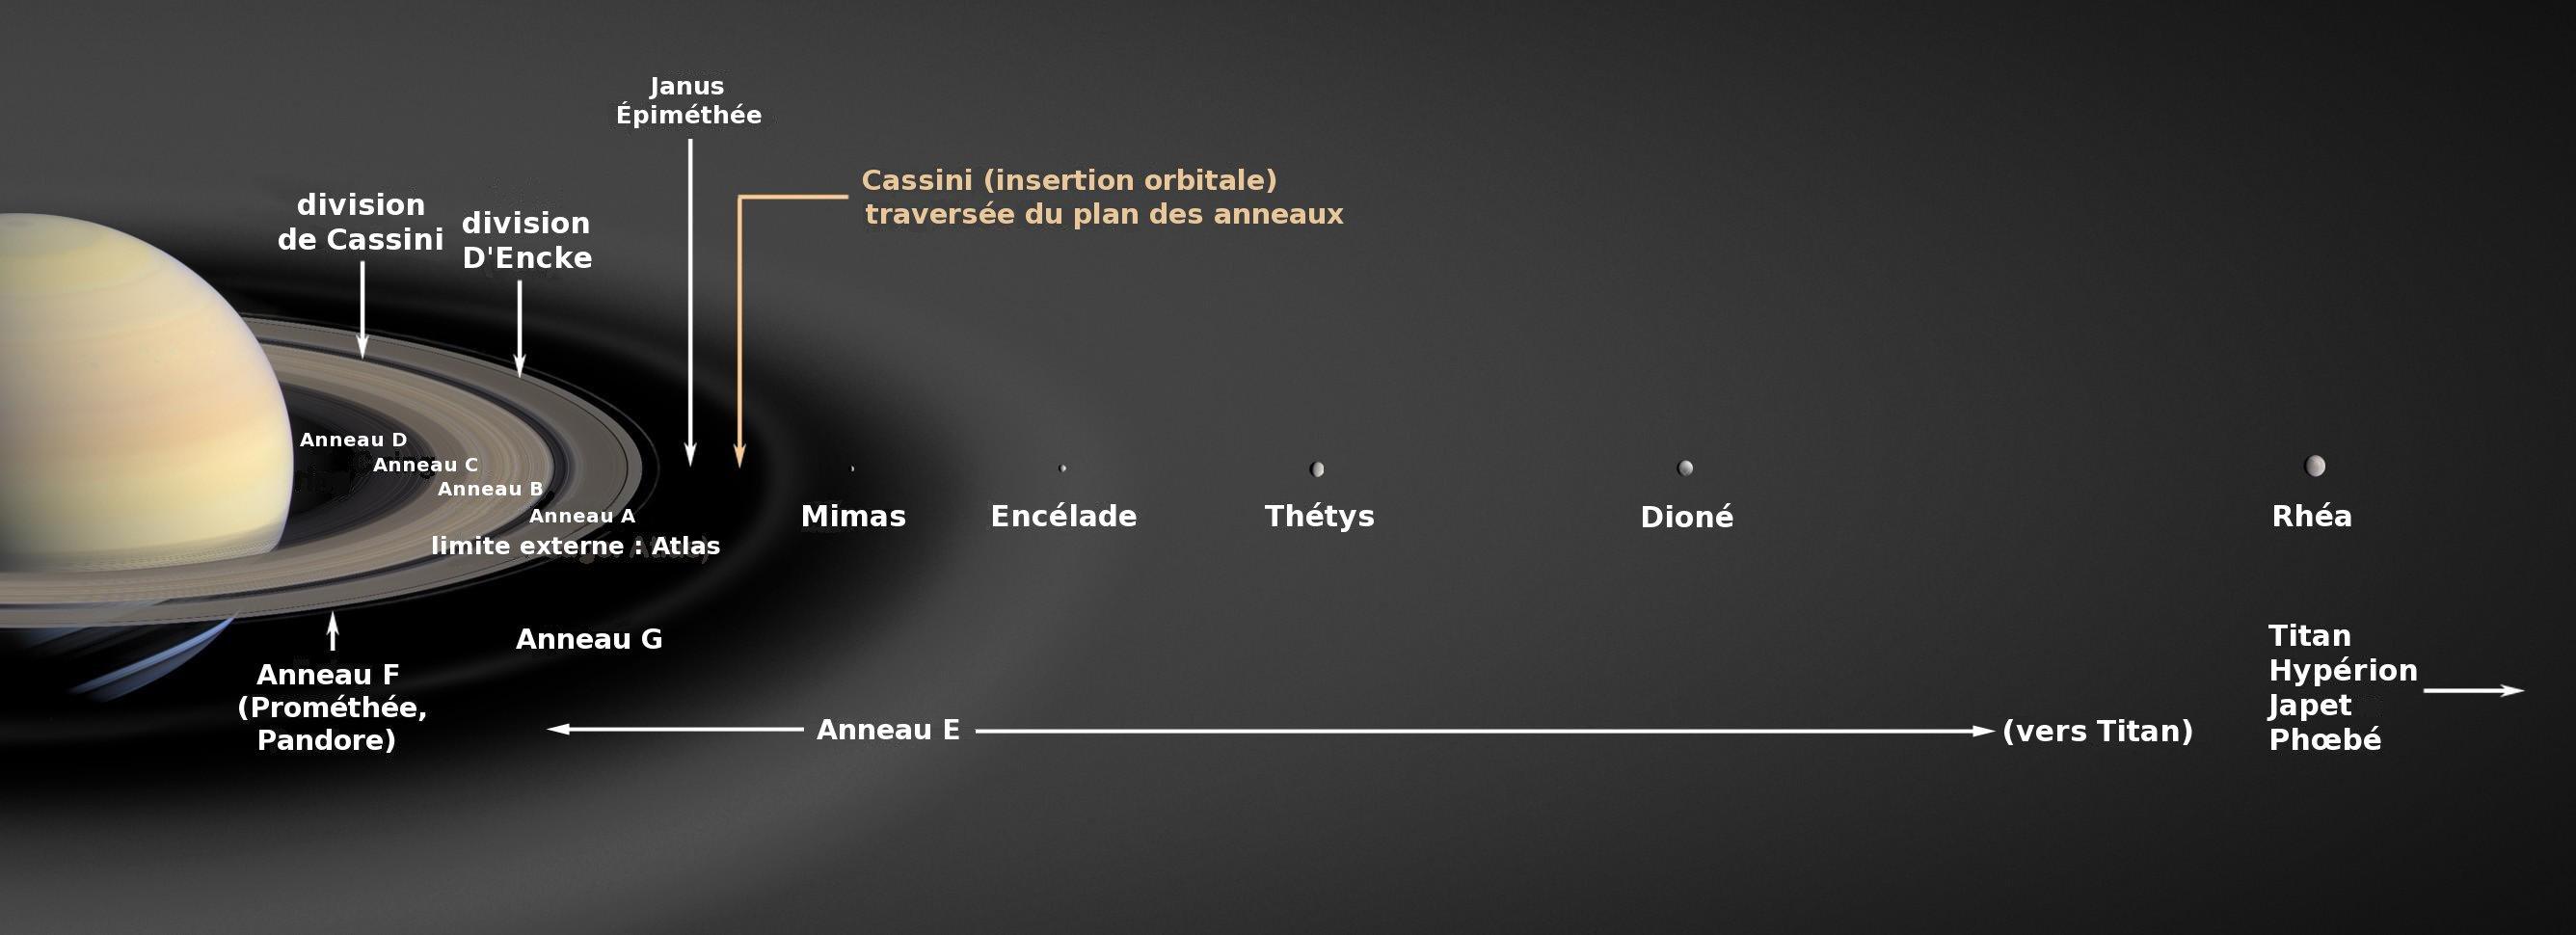 Encelade orbite à l'intérieur de l'anneau E de Saturne, à l'endroit où celui-ci est le plus dense. [NASA - Nicolas/Wikigraphistes/Stanlekub]